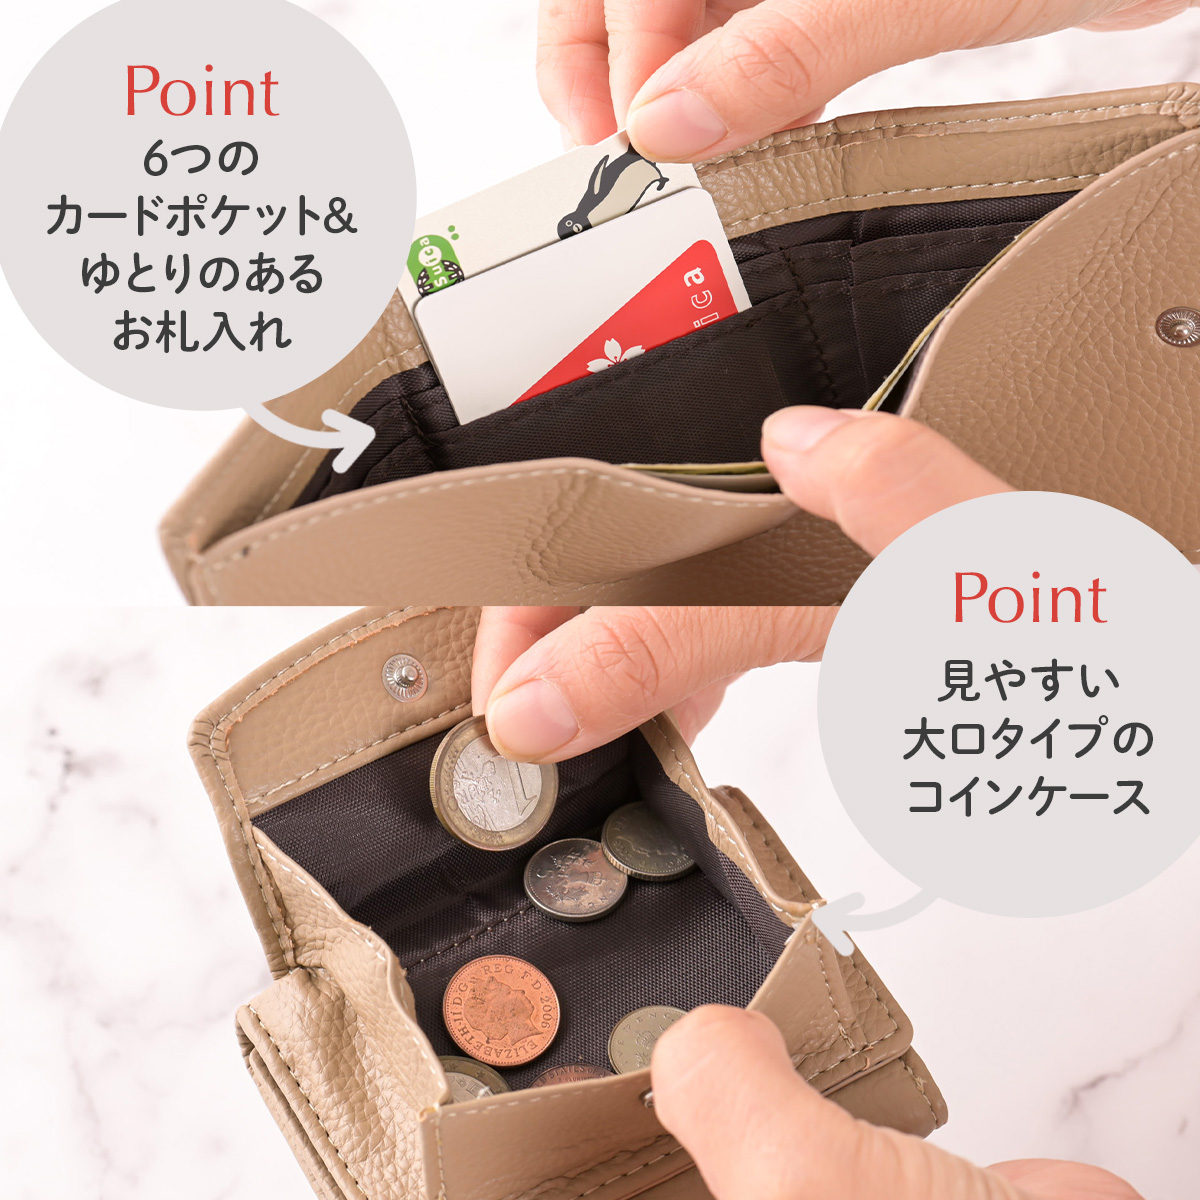  Mini кошелек кошелек женский Mini бумажник три складывать compact маленький кошелек футляр для карточек карта inserting симпатичный модный высшее маленький путешествие бесплатная доставка 